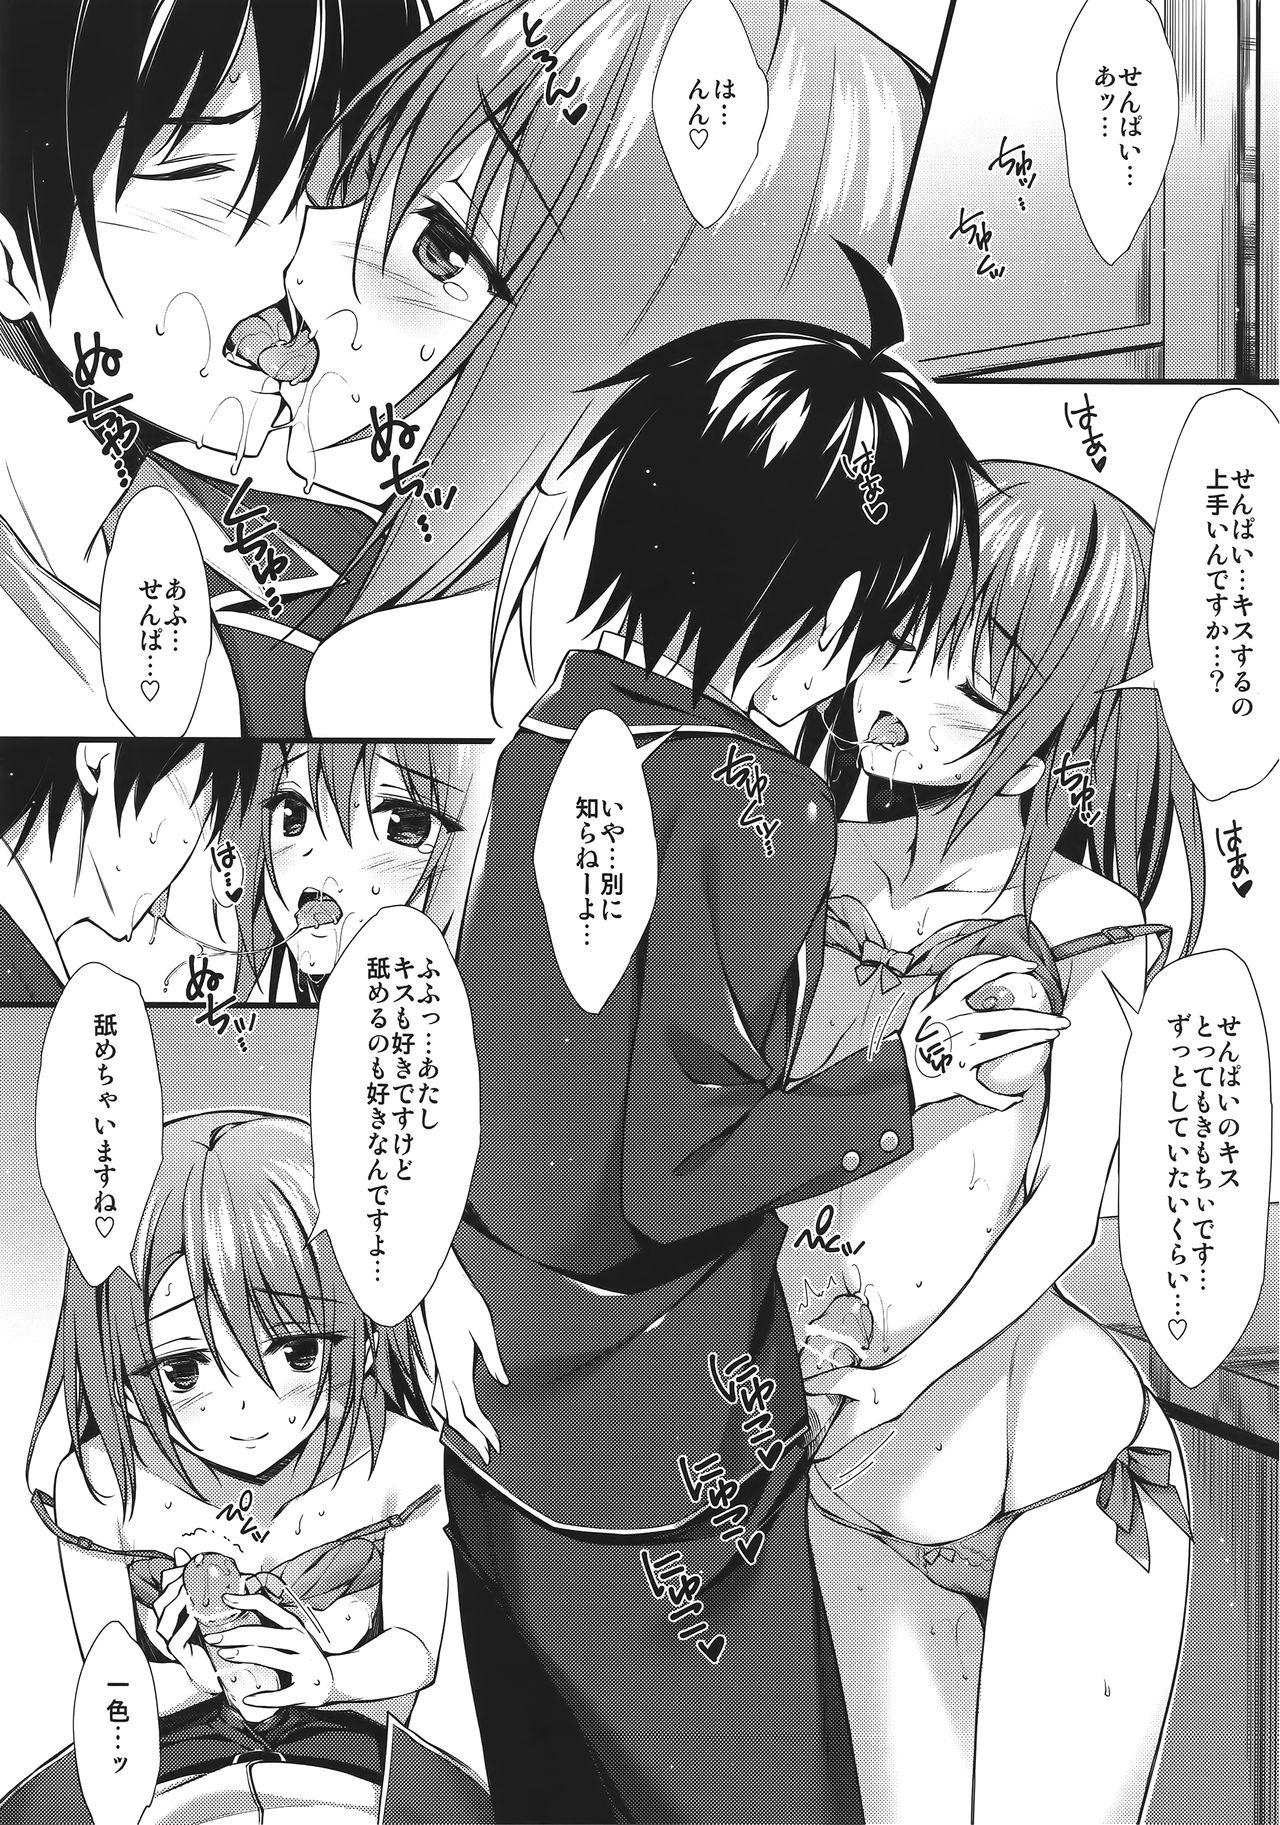 Usa Atashi no Daisuki na Senpai♥ - Yahari ore no seishun love come wa machigatteiru Swingers - Page 6